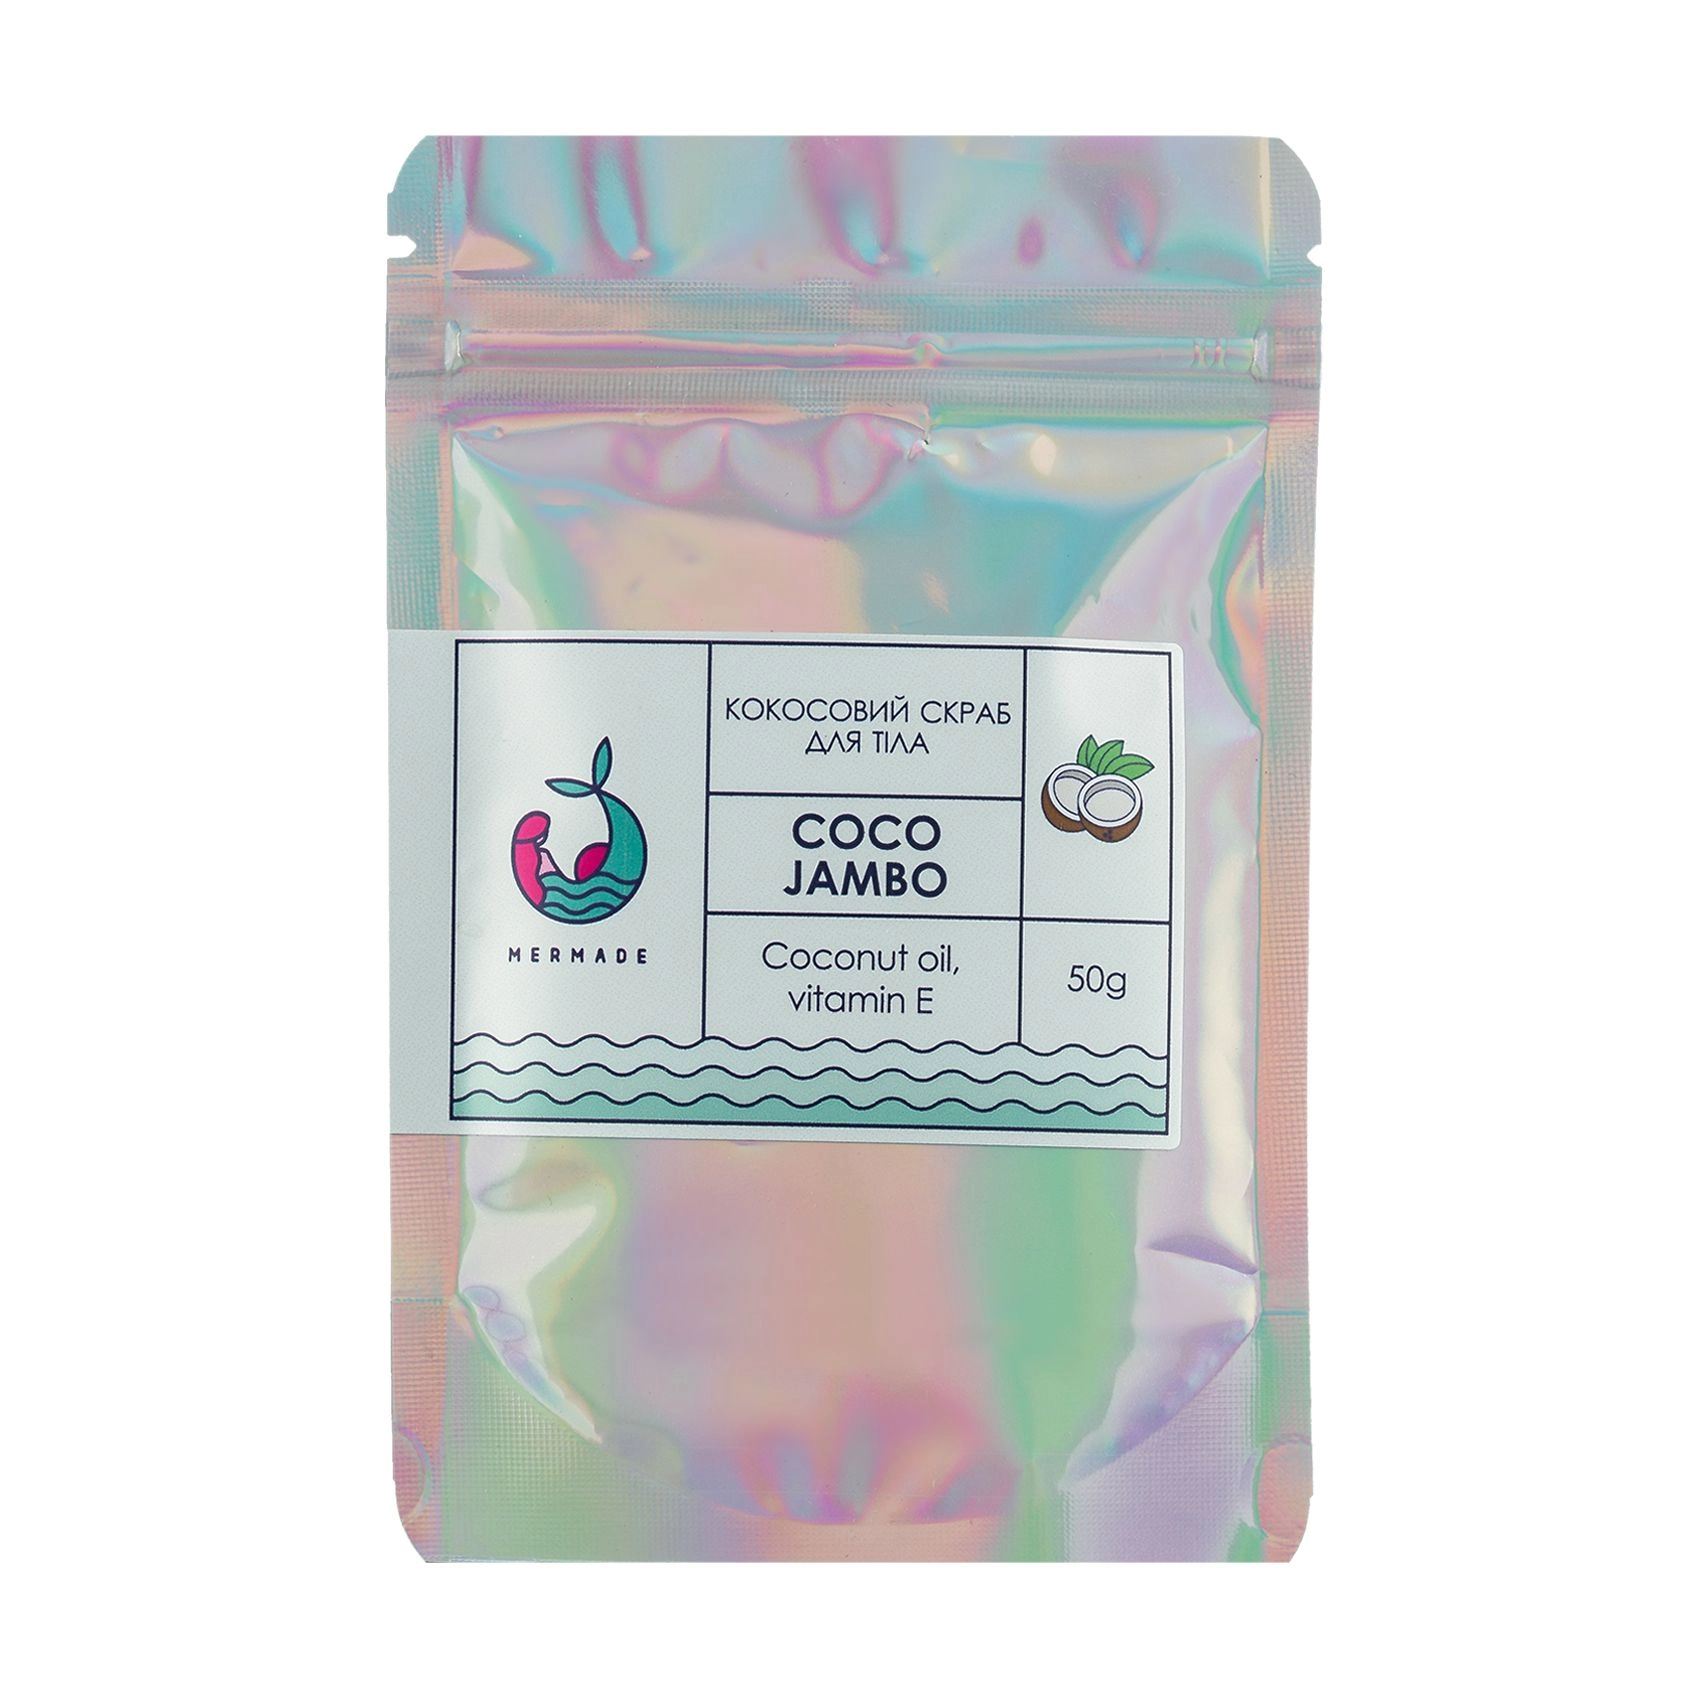 Mermade Кокосовый скраб для тела Coco Jambo с кокосовым маслом и витамином E - фото N1